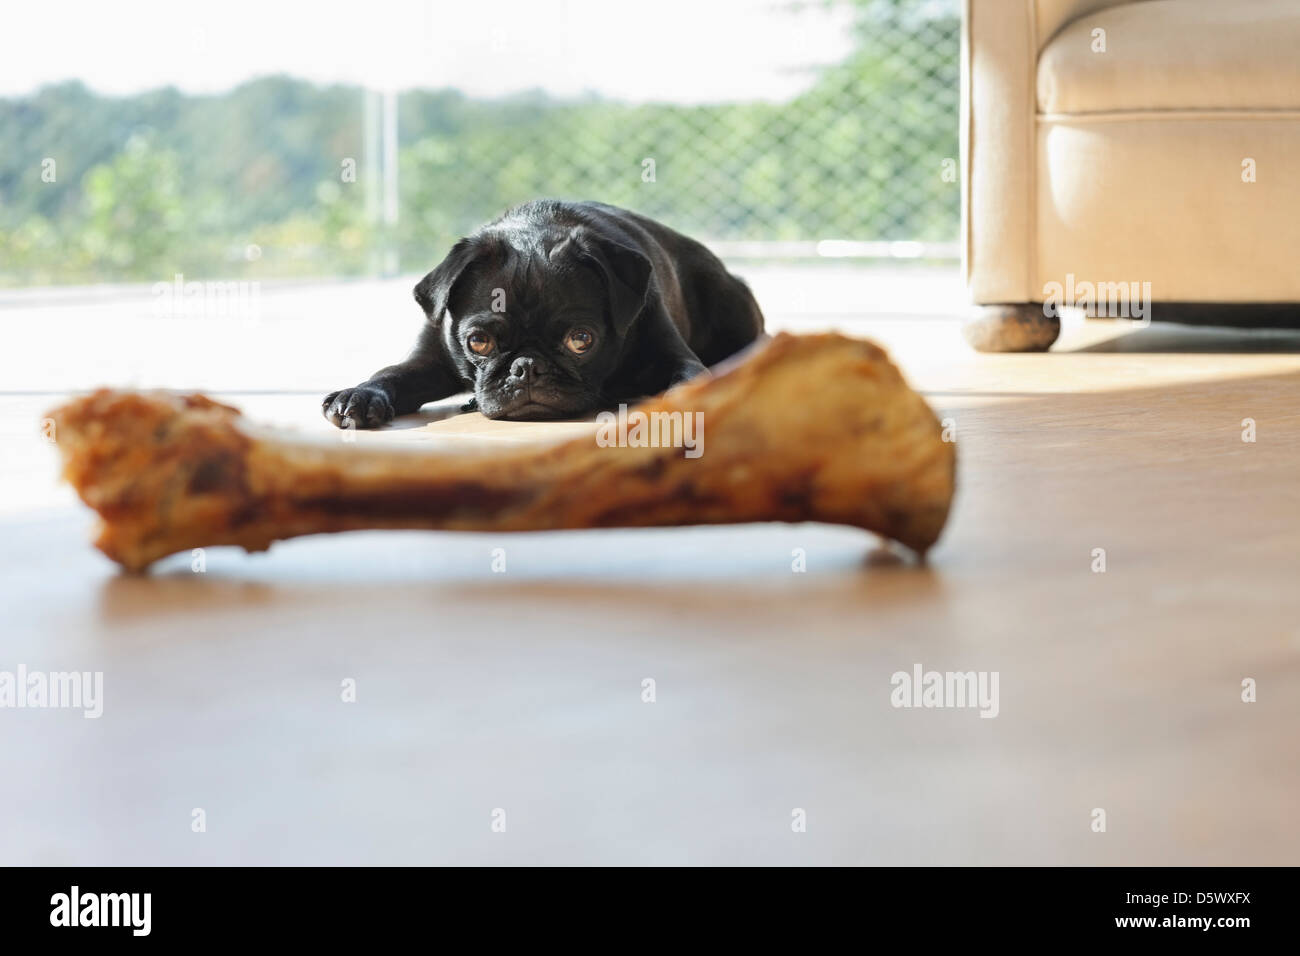 Dog resisting bone in living room Stock Photo